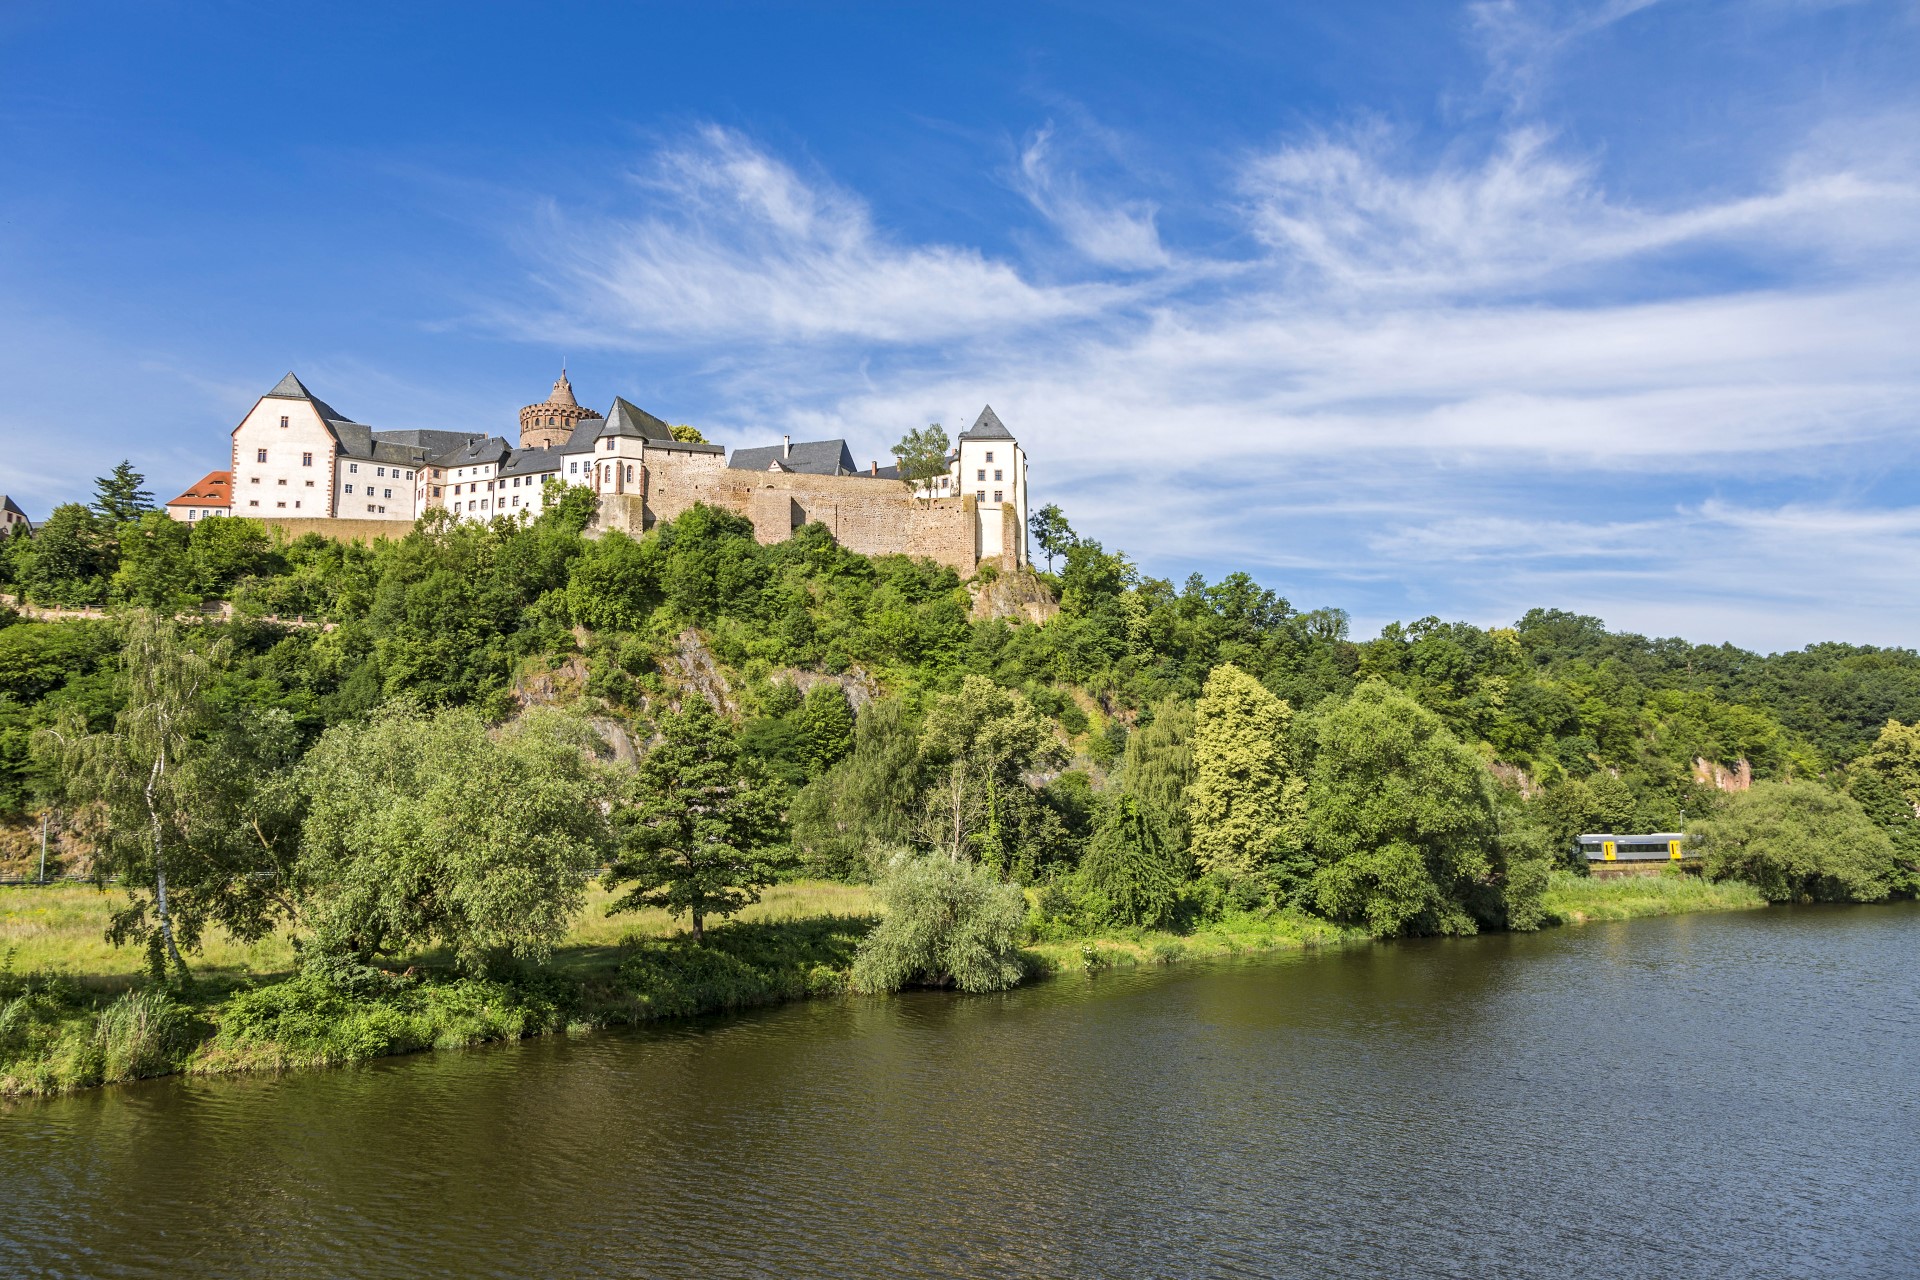 Am Fuße der imposanten Burg Mildenstein lohnt eine Rast. Foto: PUNCTUM | Leipzig Travel